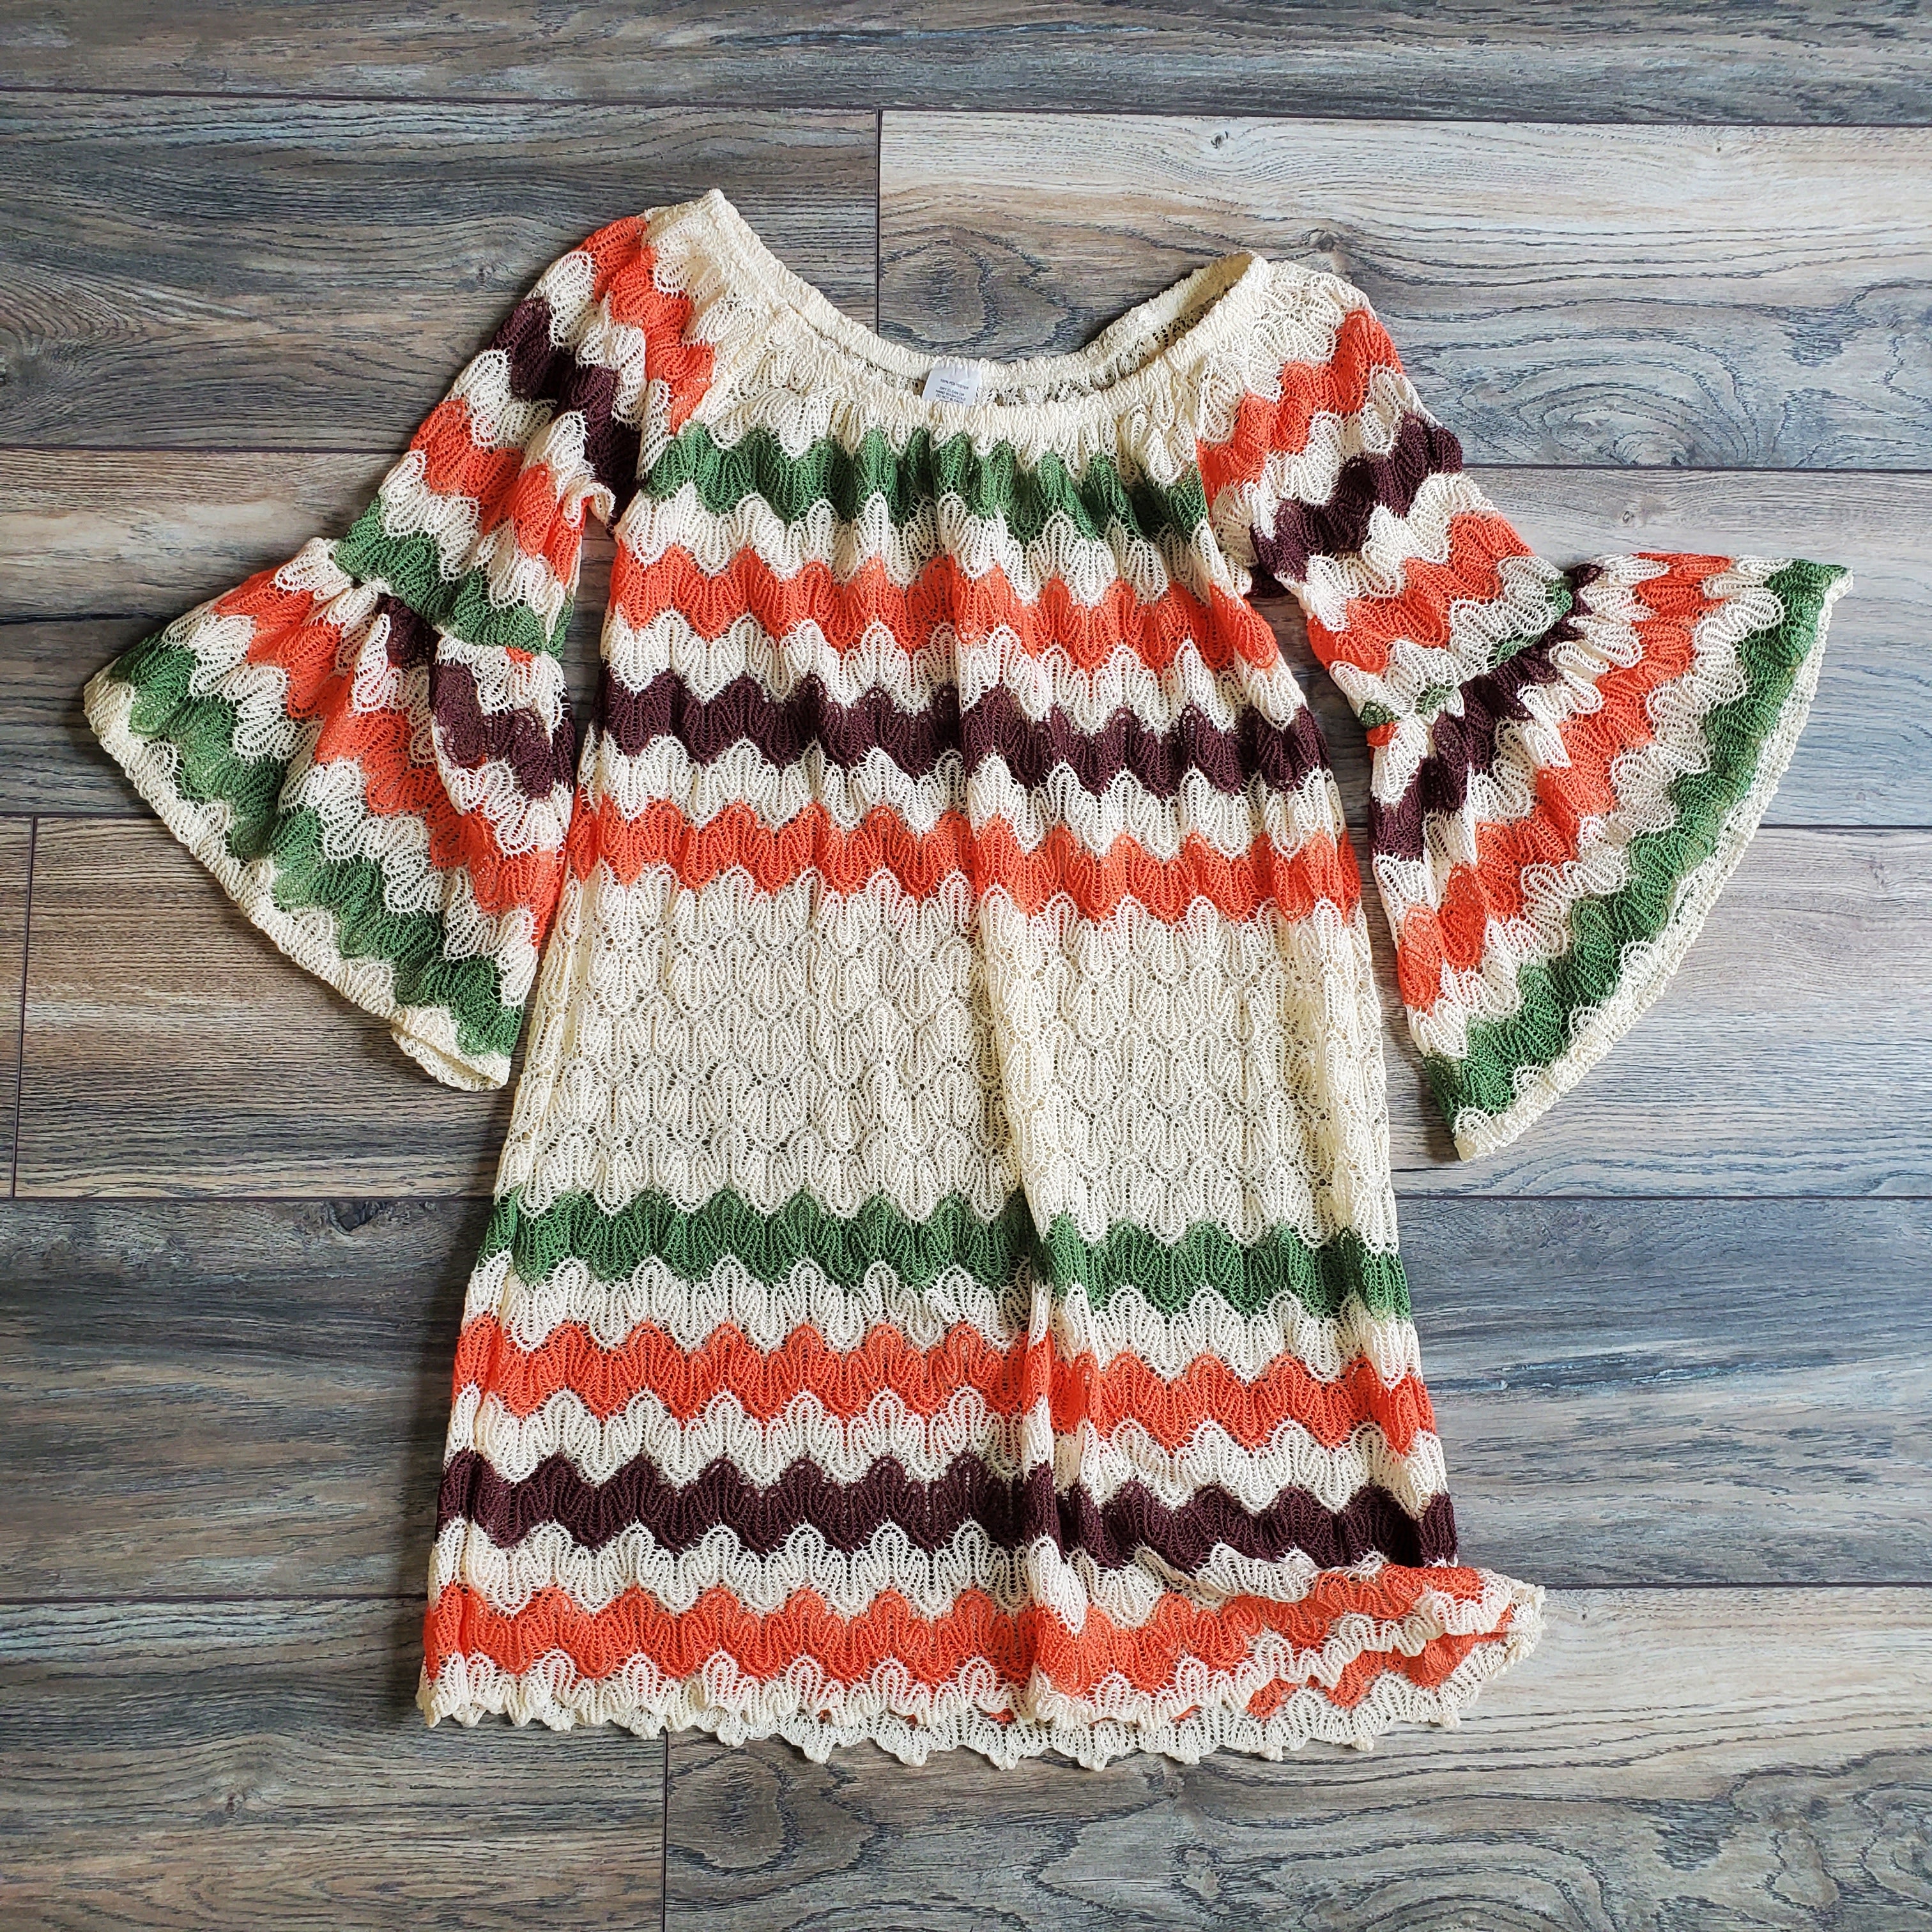 Crochet Bell Sleeve Top